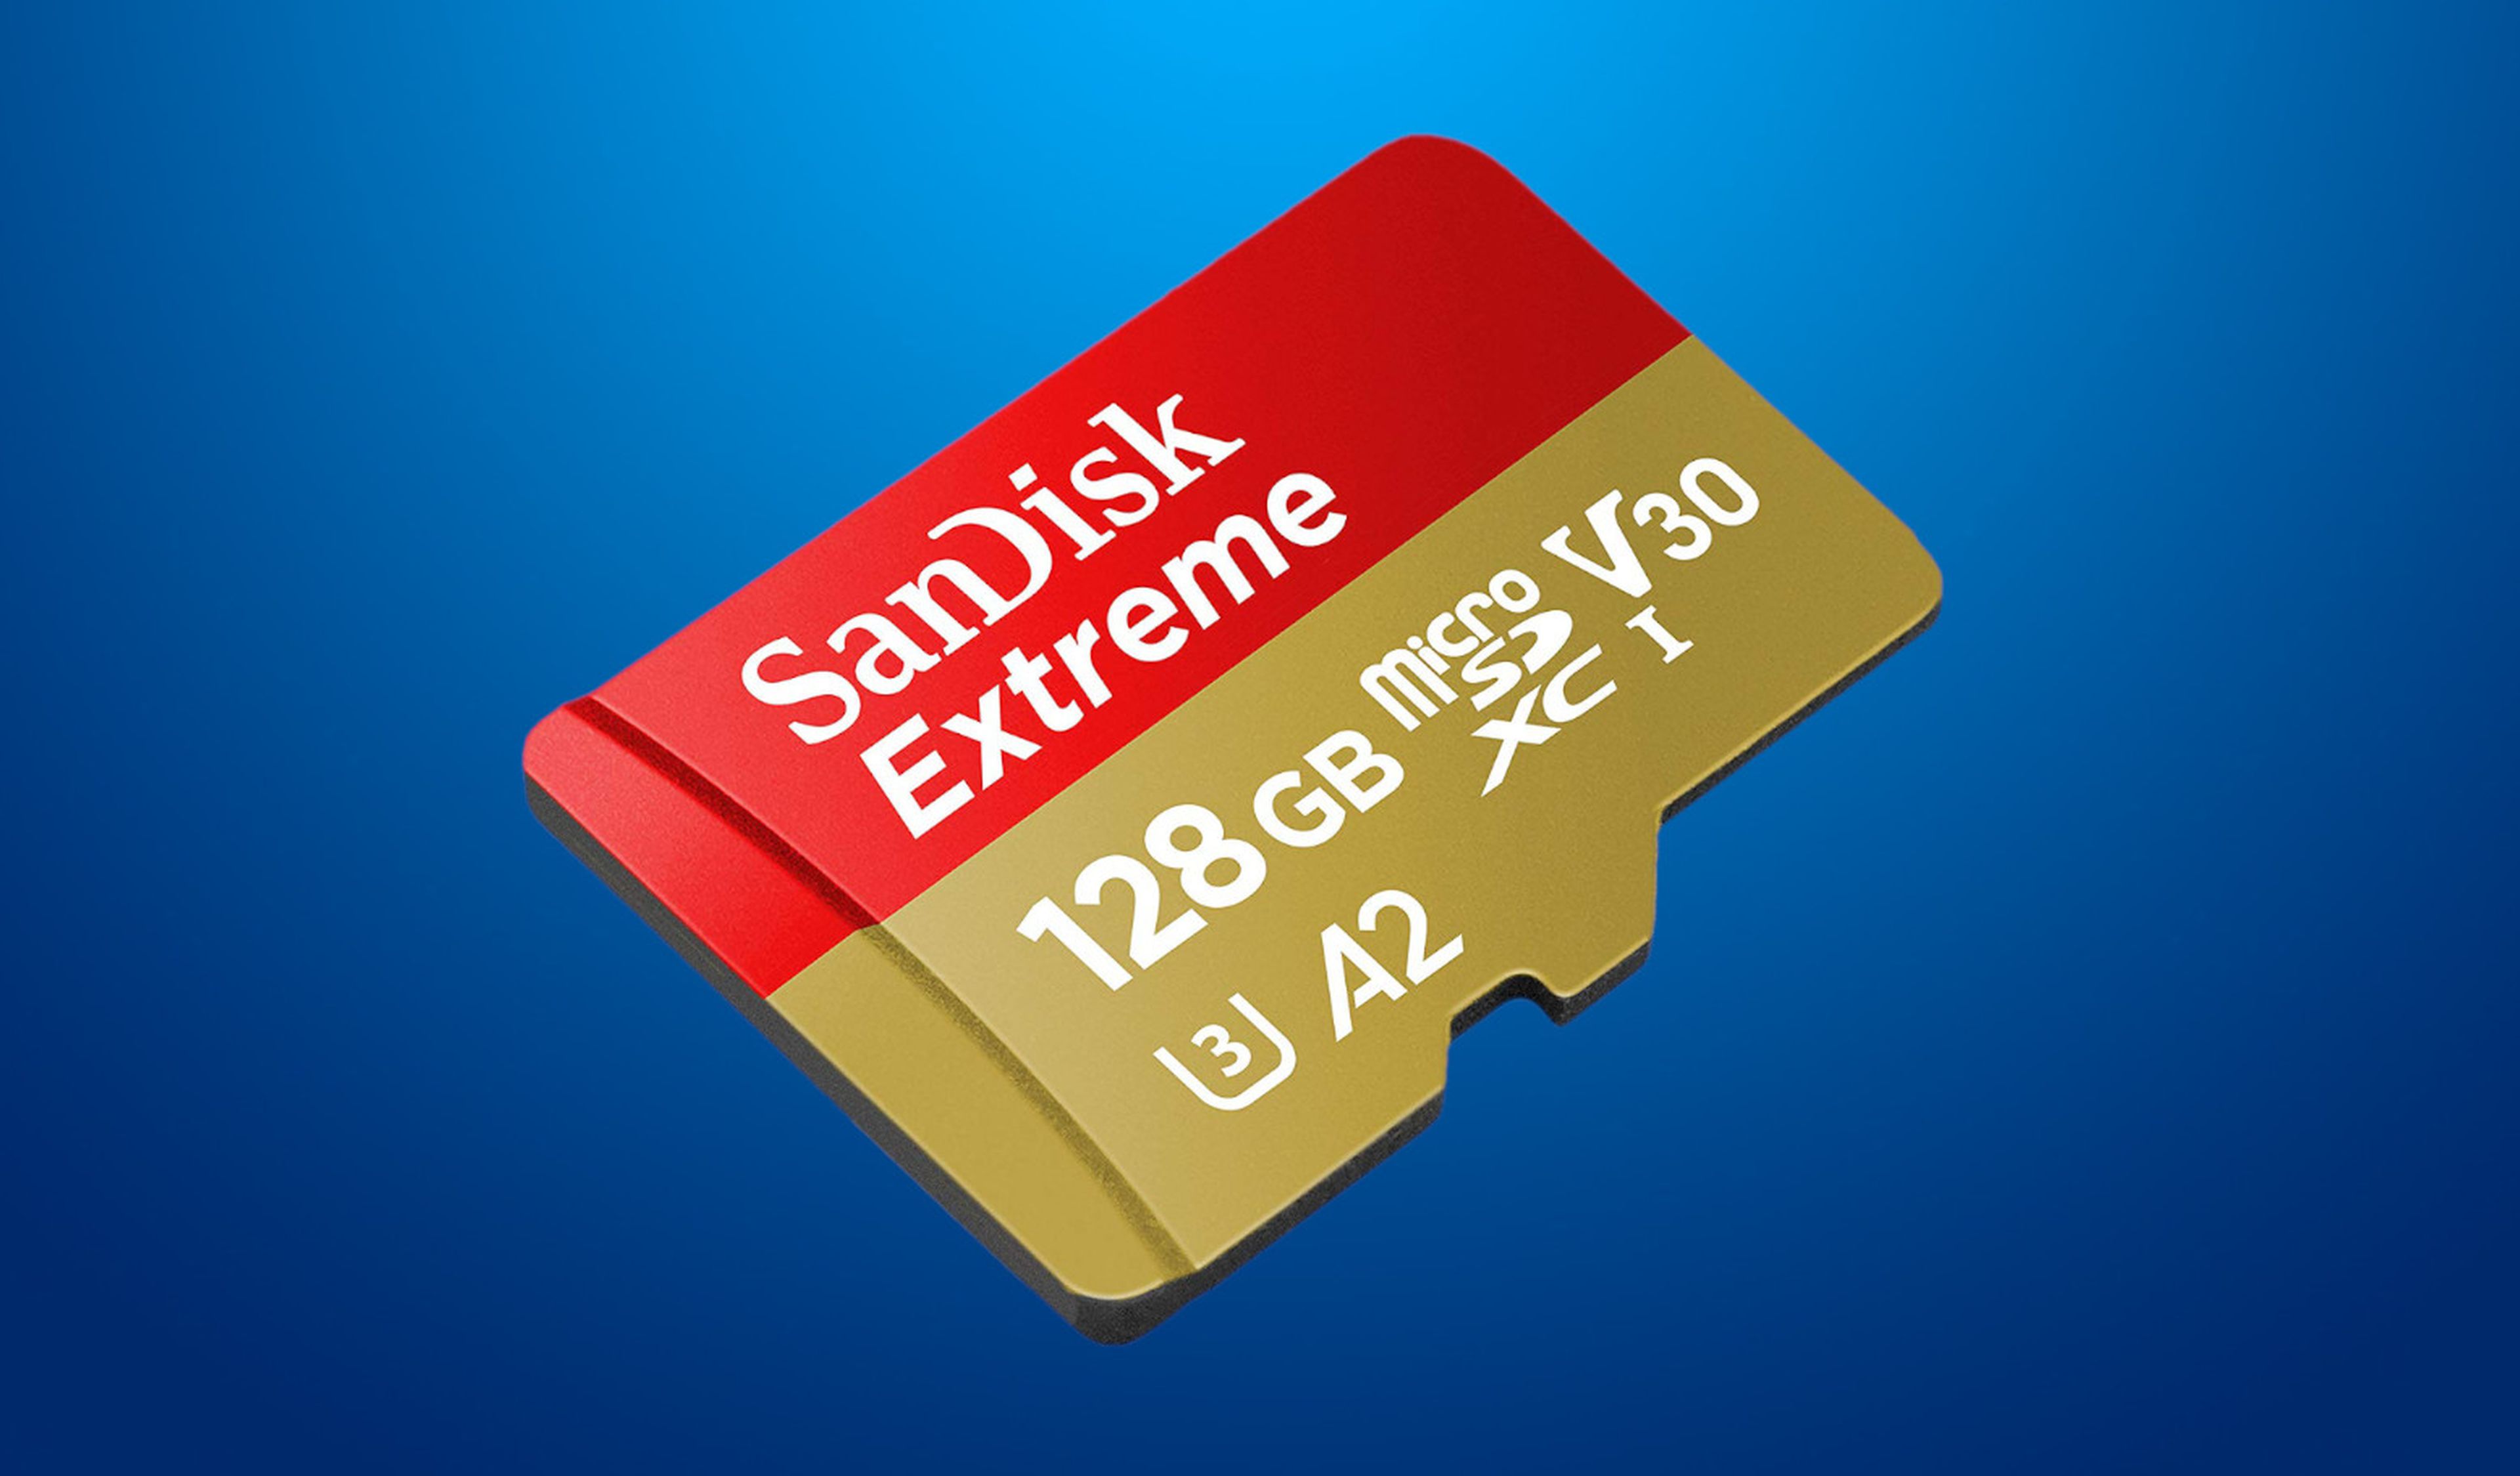 SanDisk Extreme